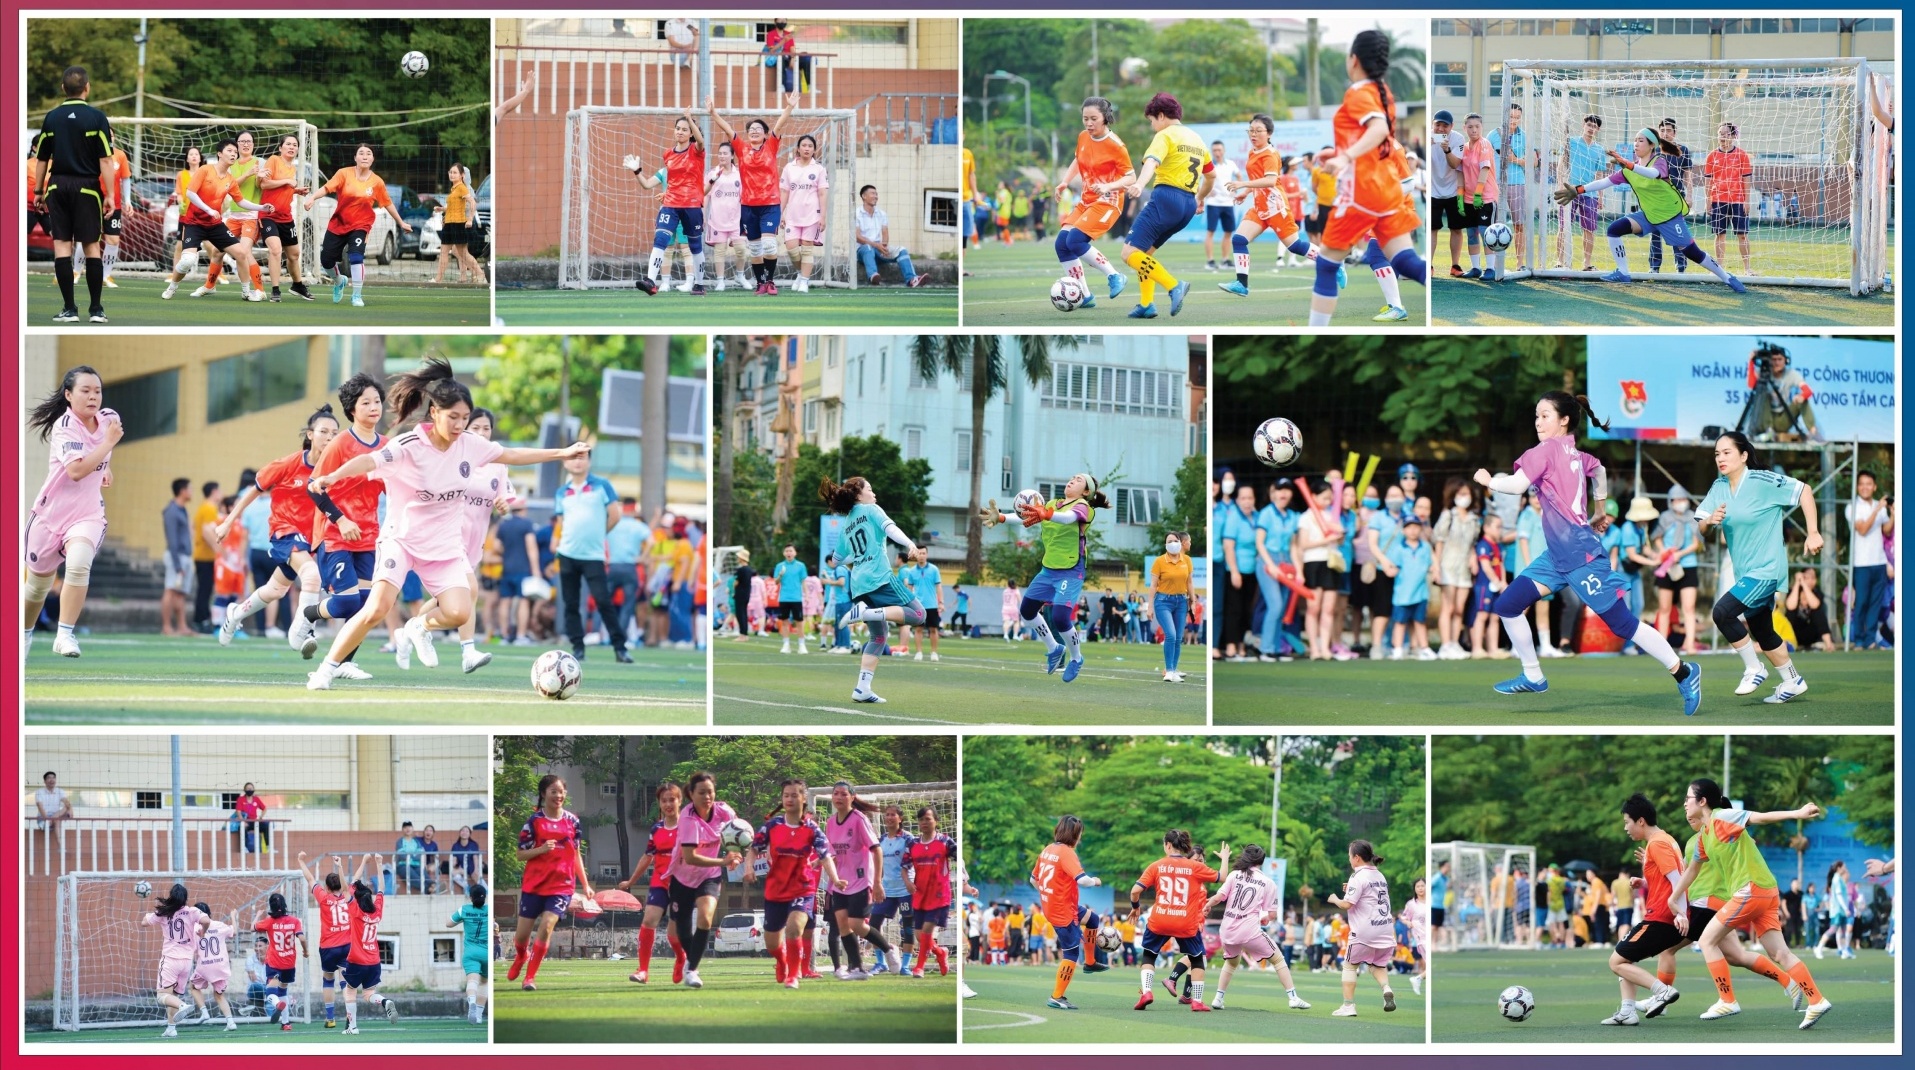 Đoàn Thanh niên VietinBank tổ chức Giải bóng đá nữ Thanh niên